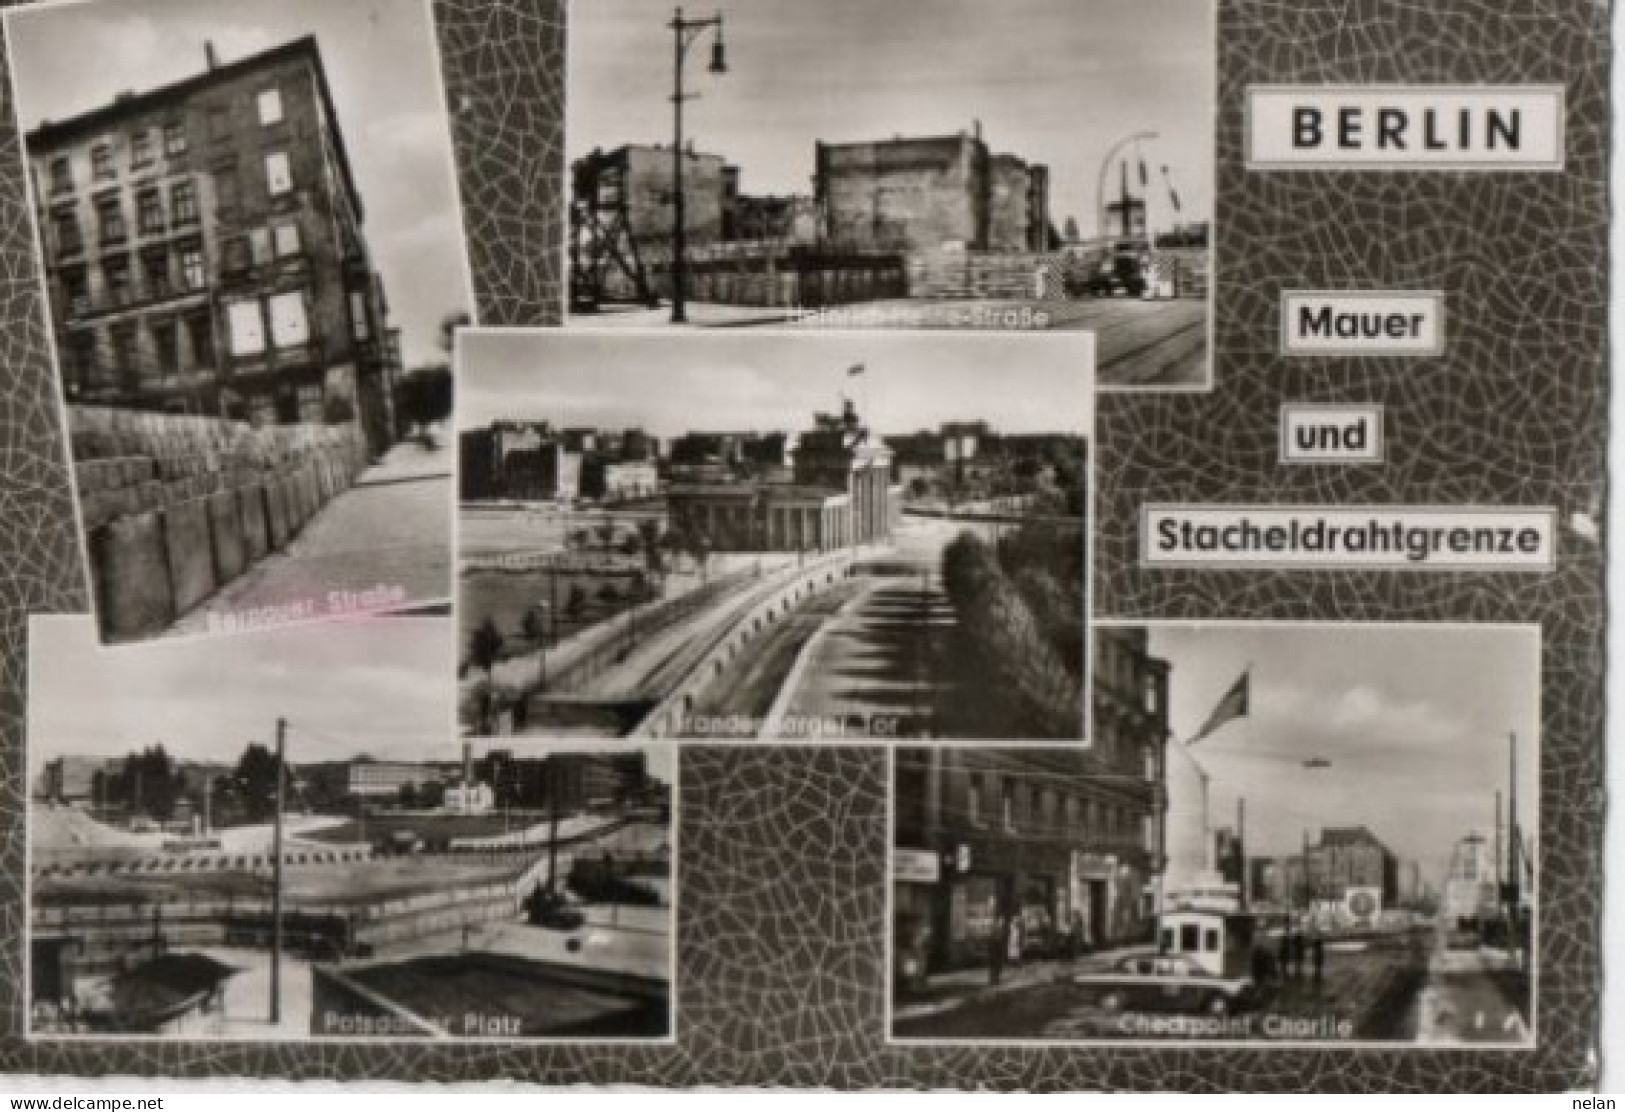 BERLIN - MAUER UND STACHELDRAHTGRENZE - Berliner Mauer